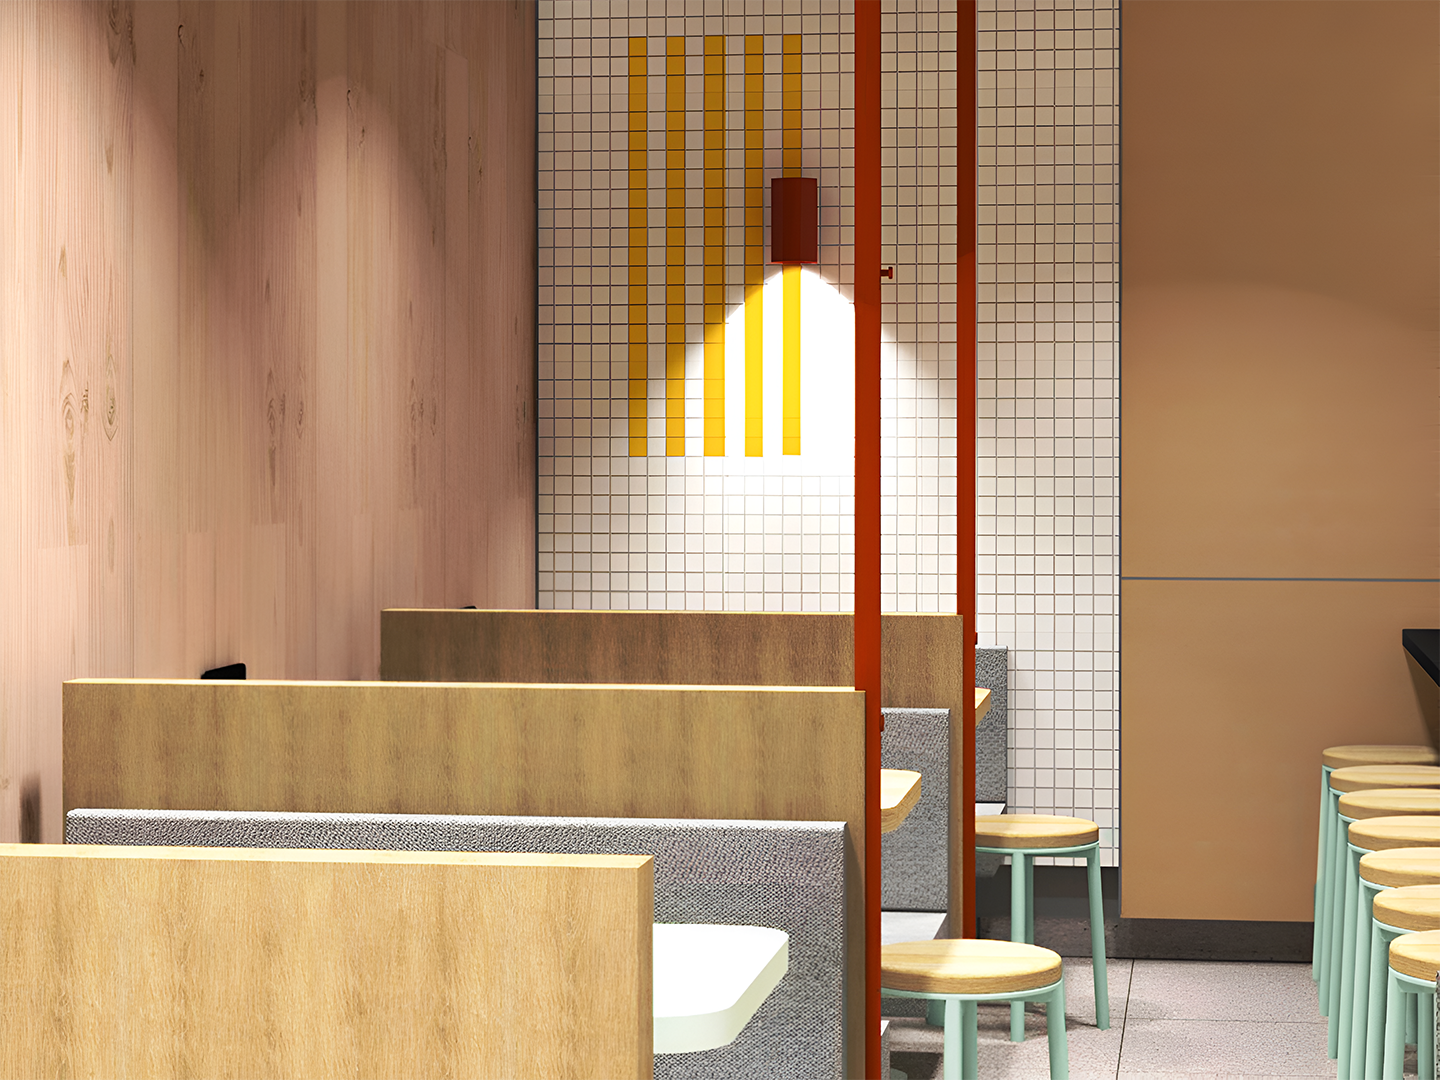 Conception de restaurant - Meubles de restauration sur mesure - McDonald's Human Comfort - Luminaires sur mesure - Meubles sur mesure - Industrie de la restauration